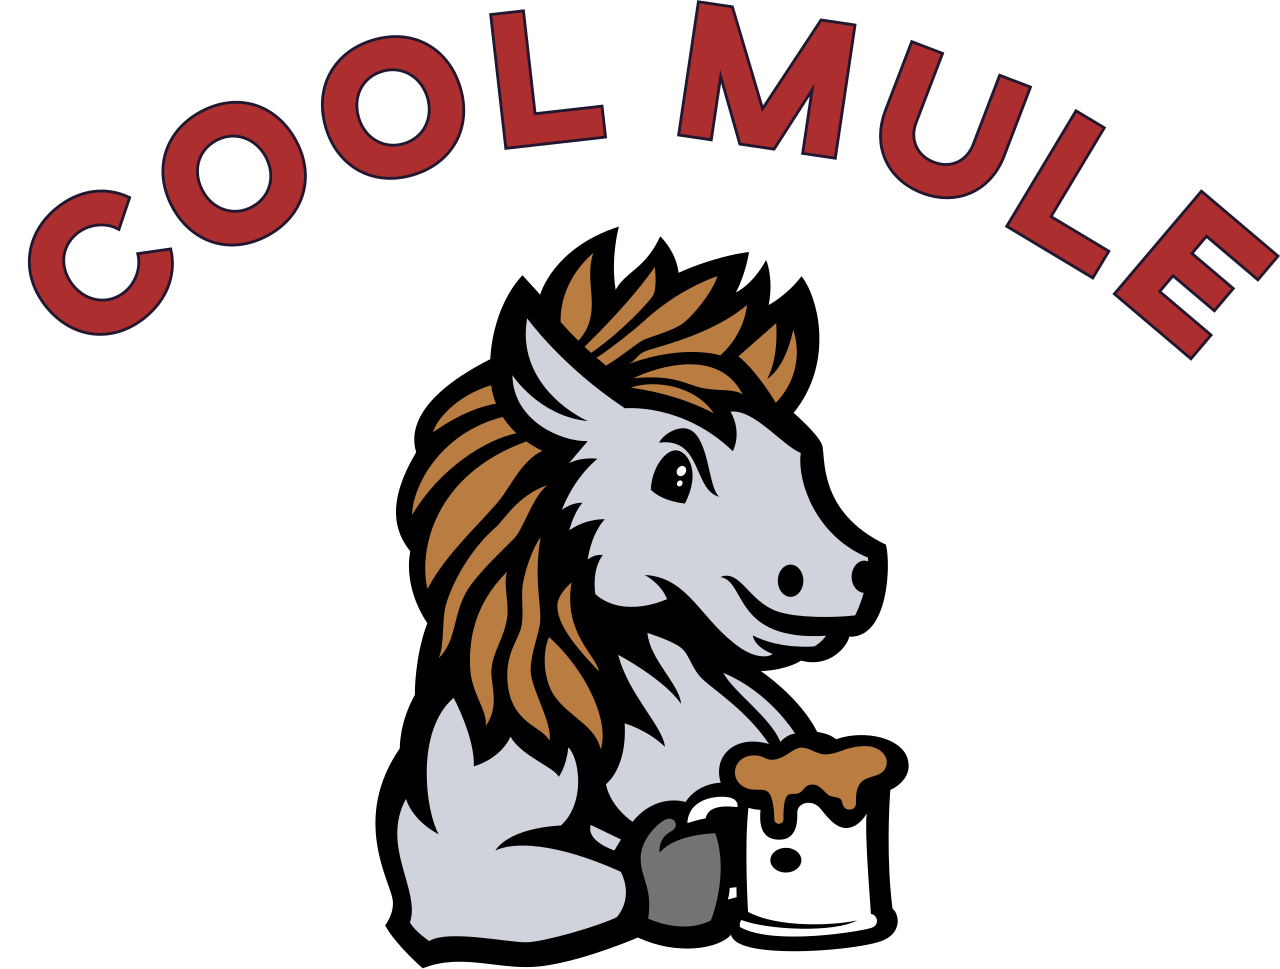 Cool Mule's logo